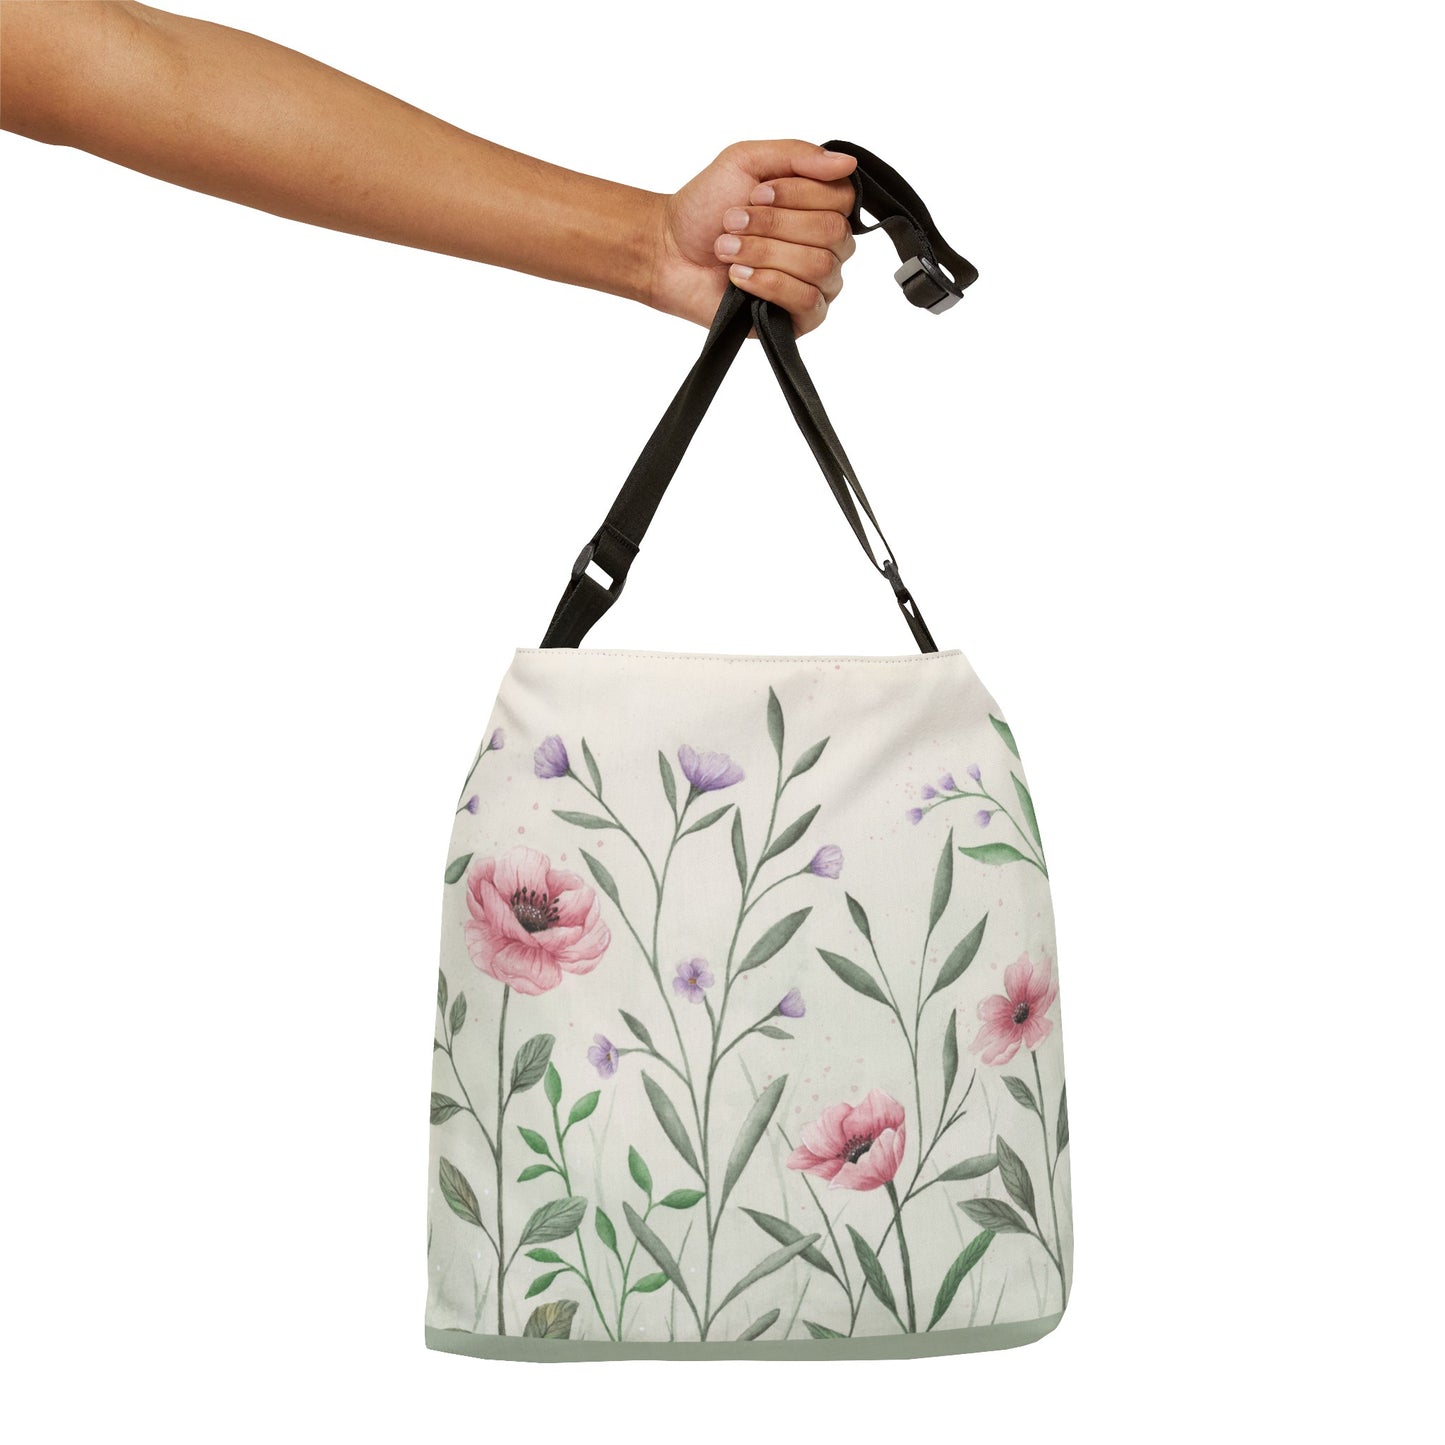 Adjustable Tote Bag - Spring Blossoms